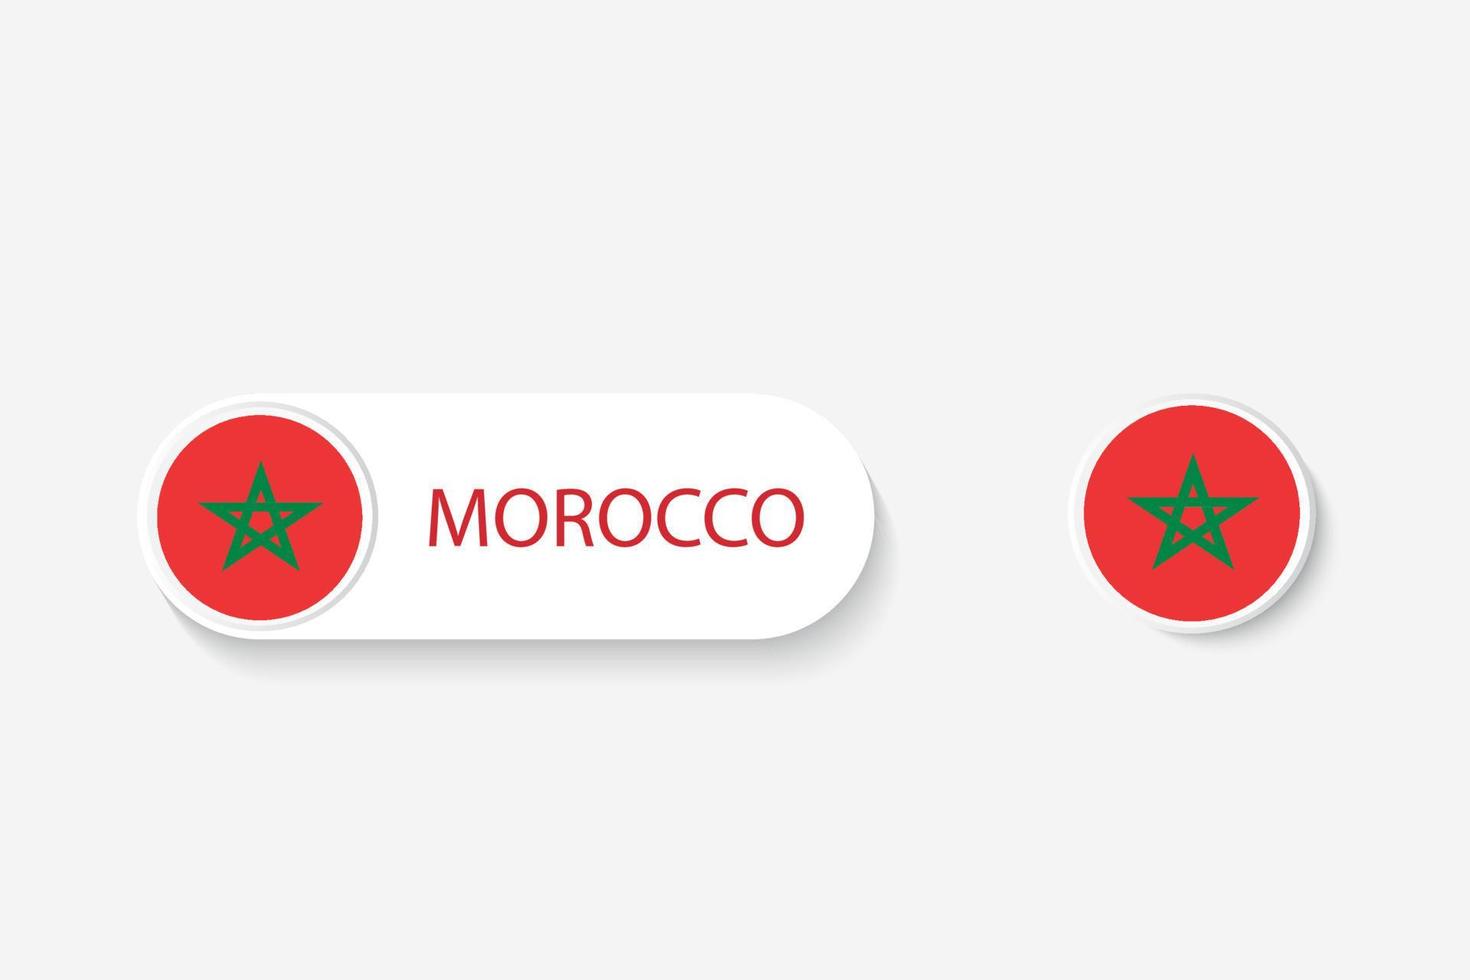 Bandiera del pulsante del Marocco nell'illustrazione di forma ovale con la parola del Marocco. e pulsante bandiera marocco. vettore